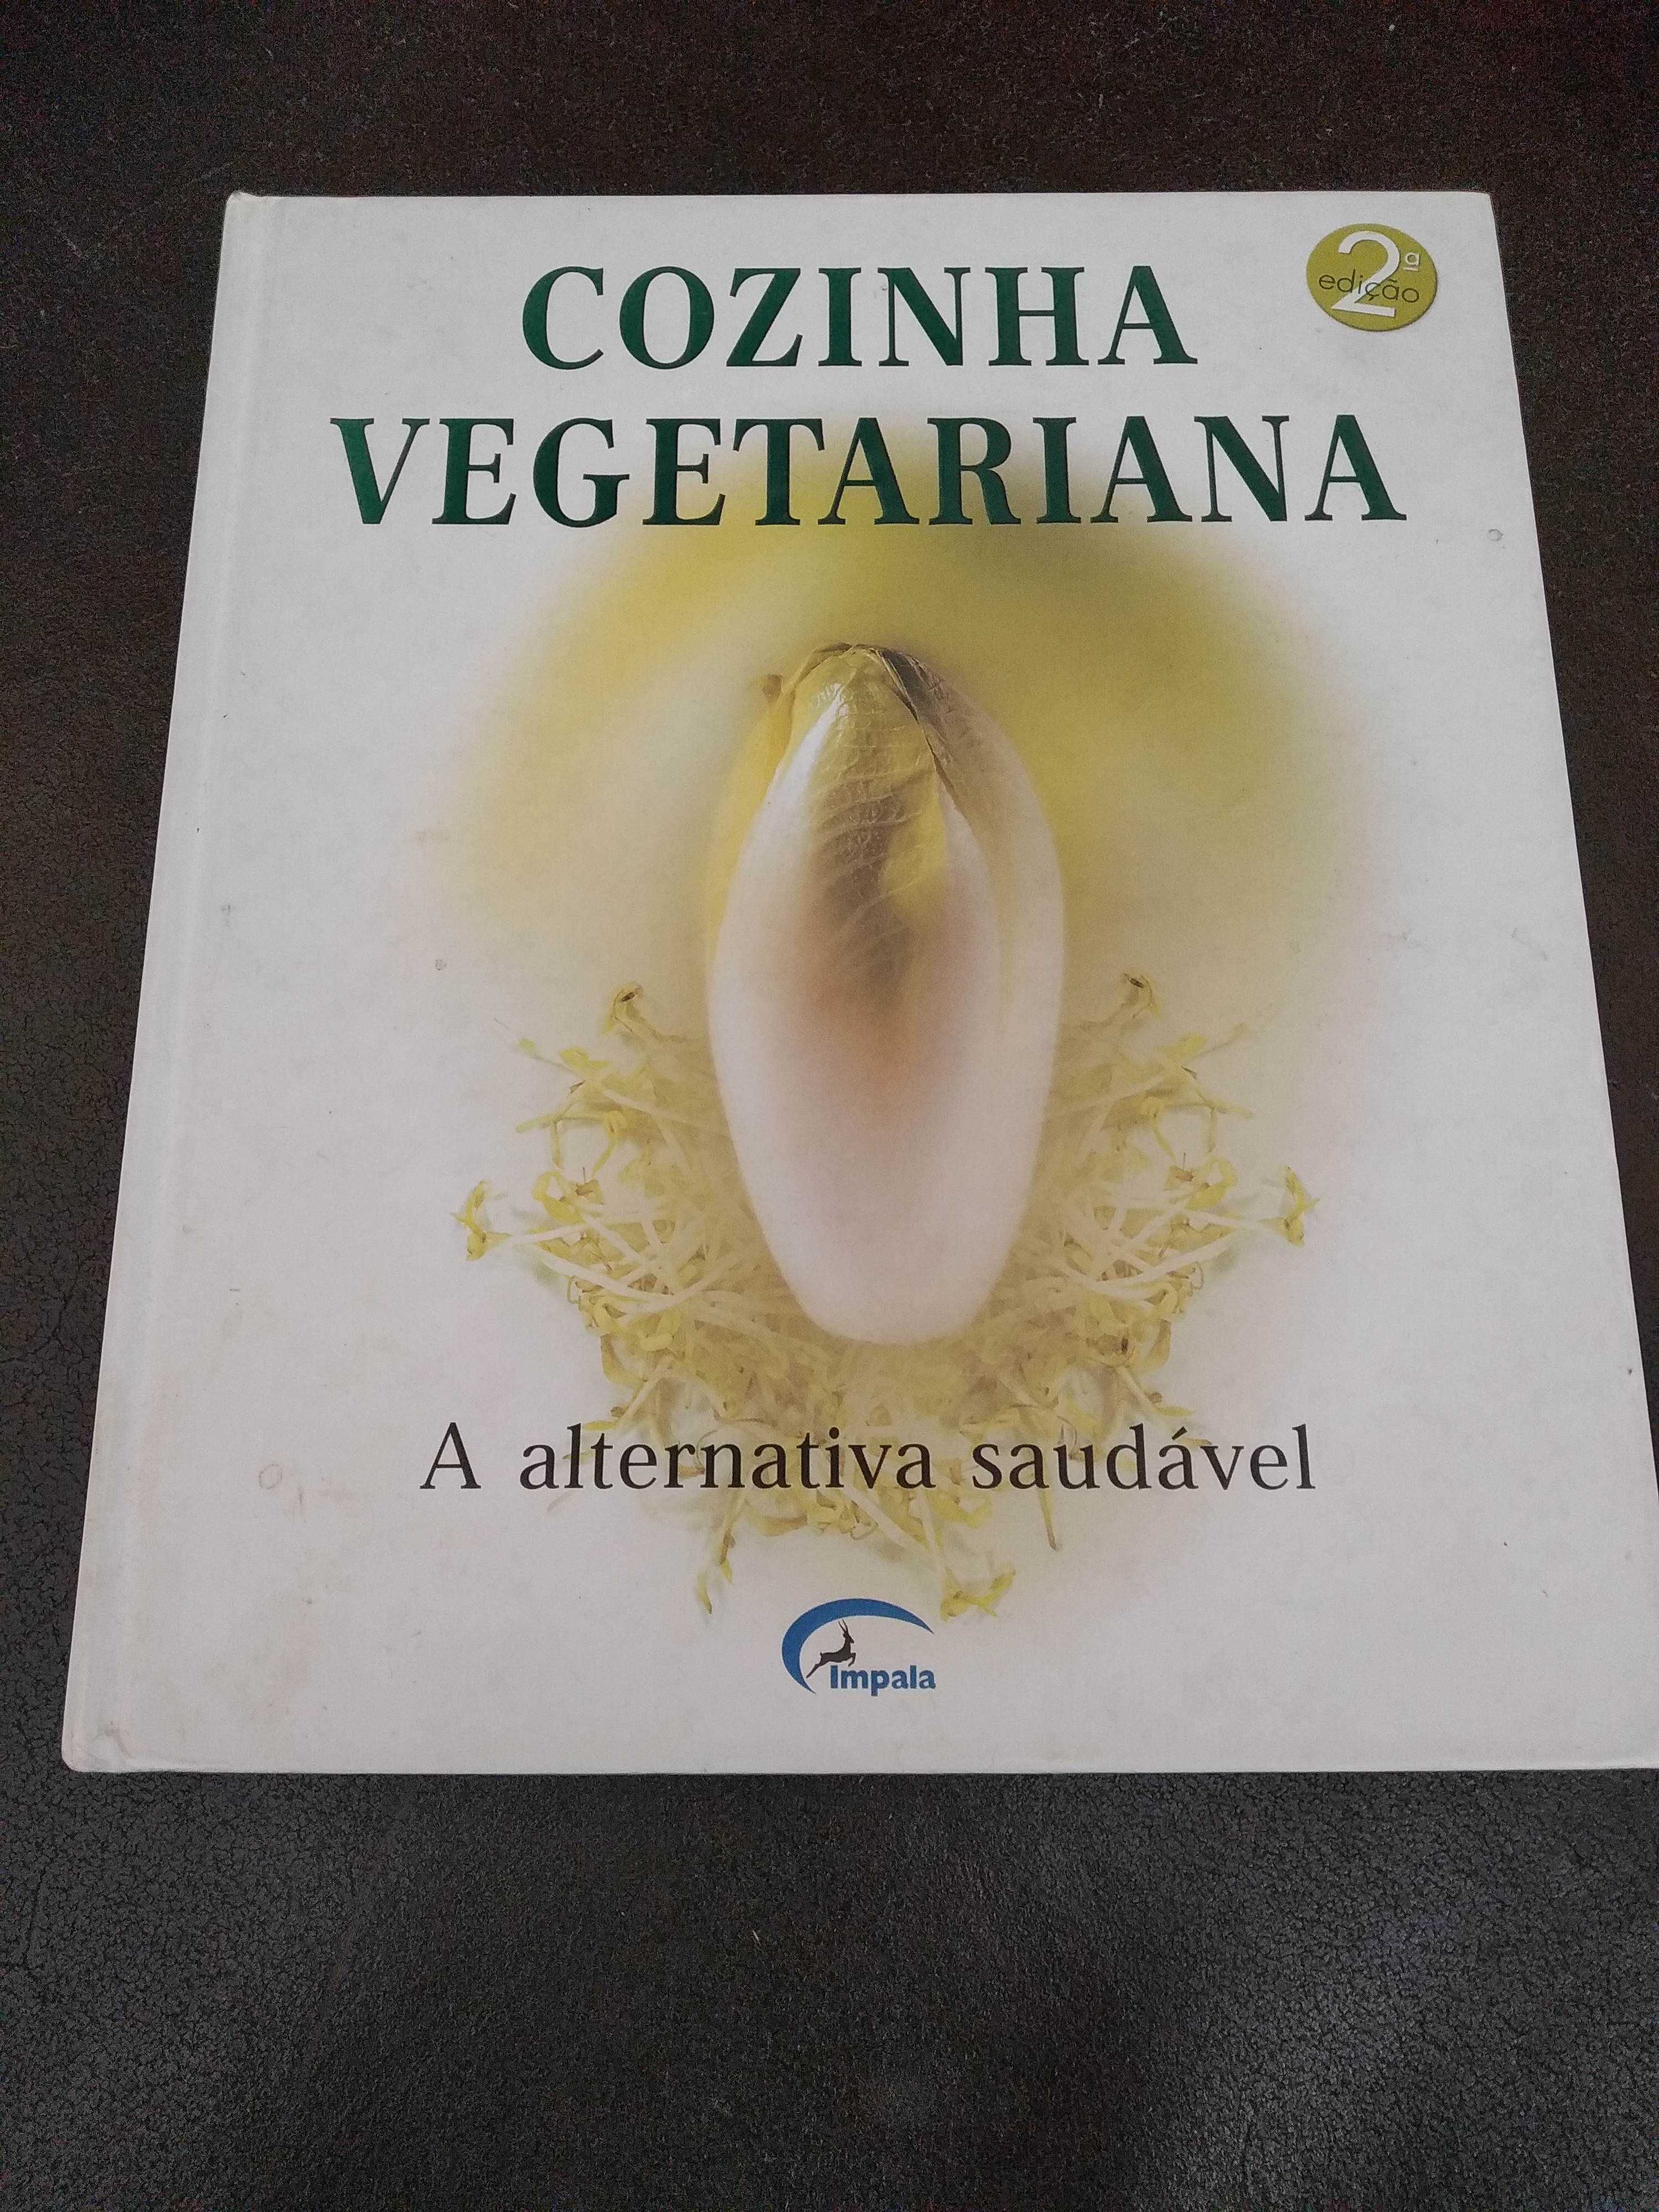 Livros vegetarianos